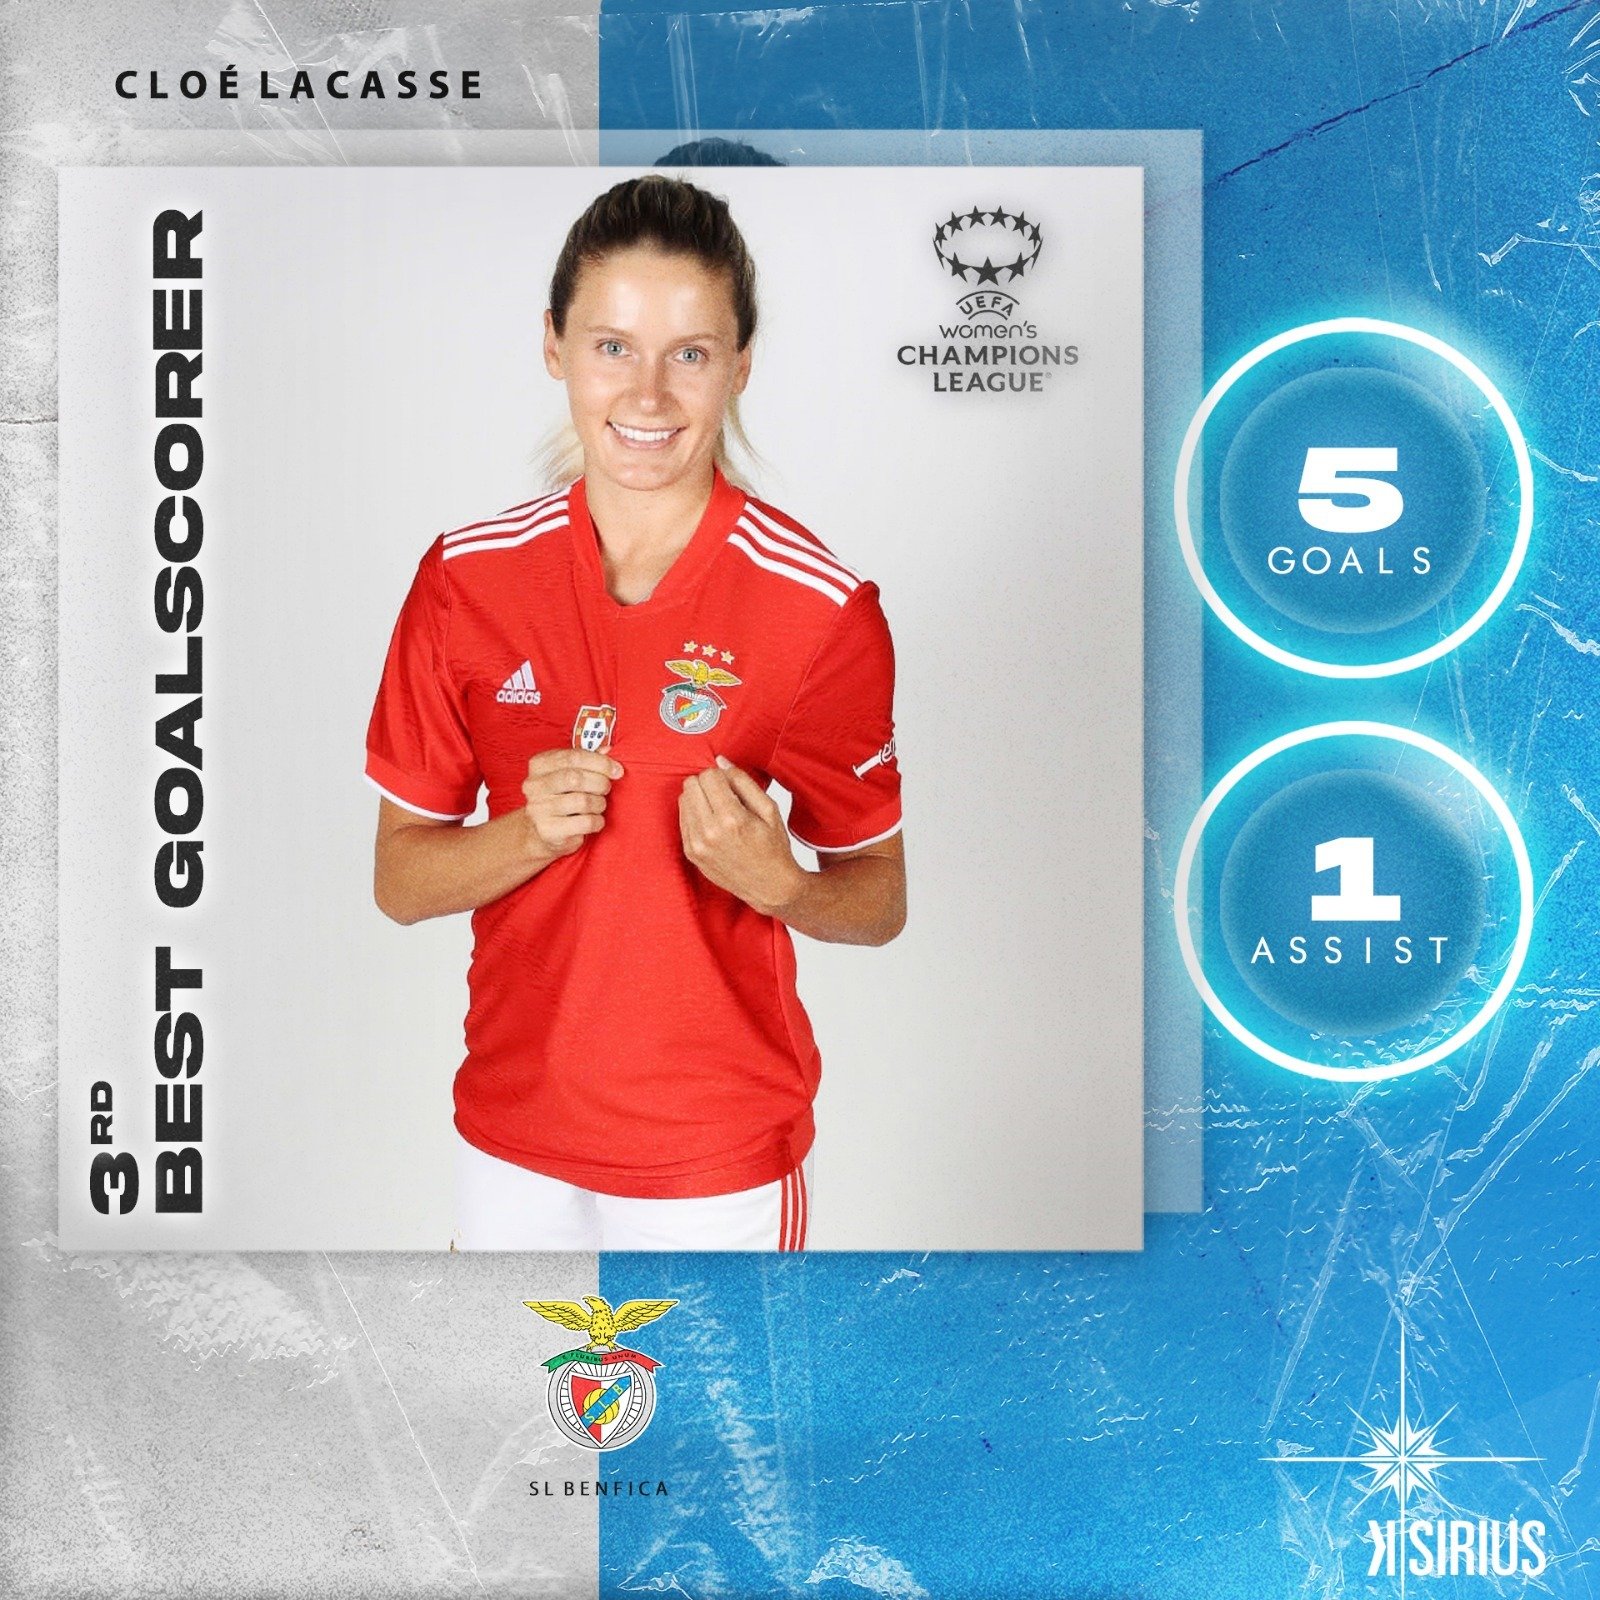 3rd Best Goalscorer: Cloé Lacasse (SL Benfica)